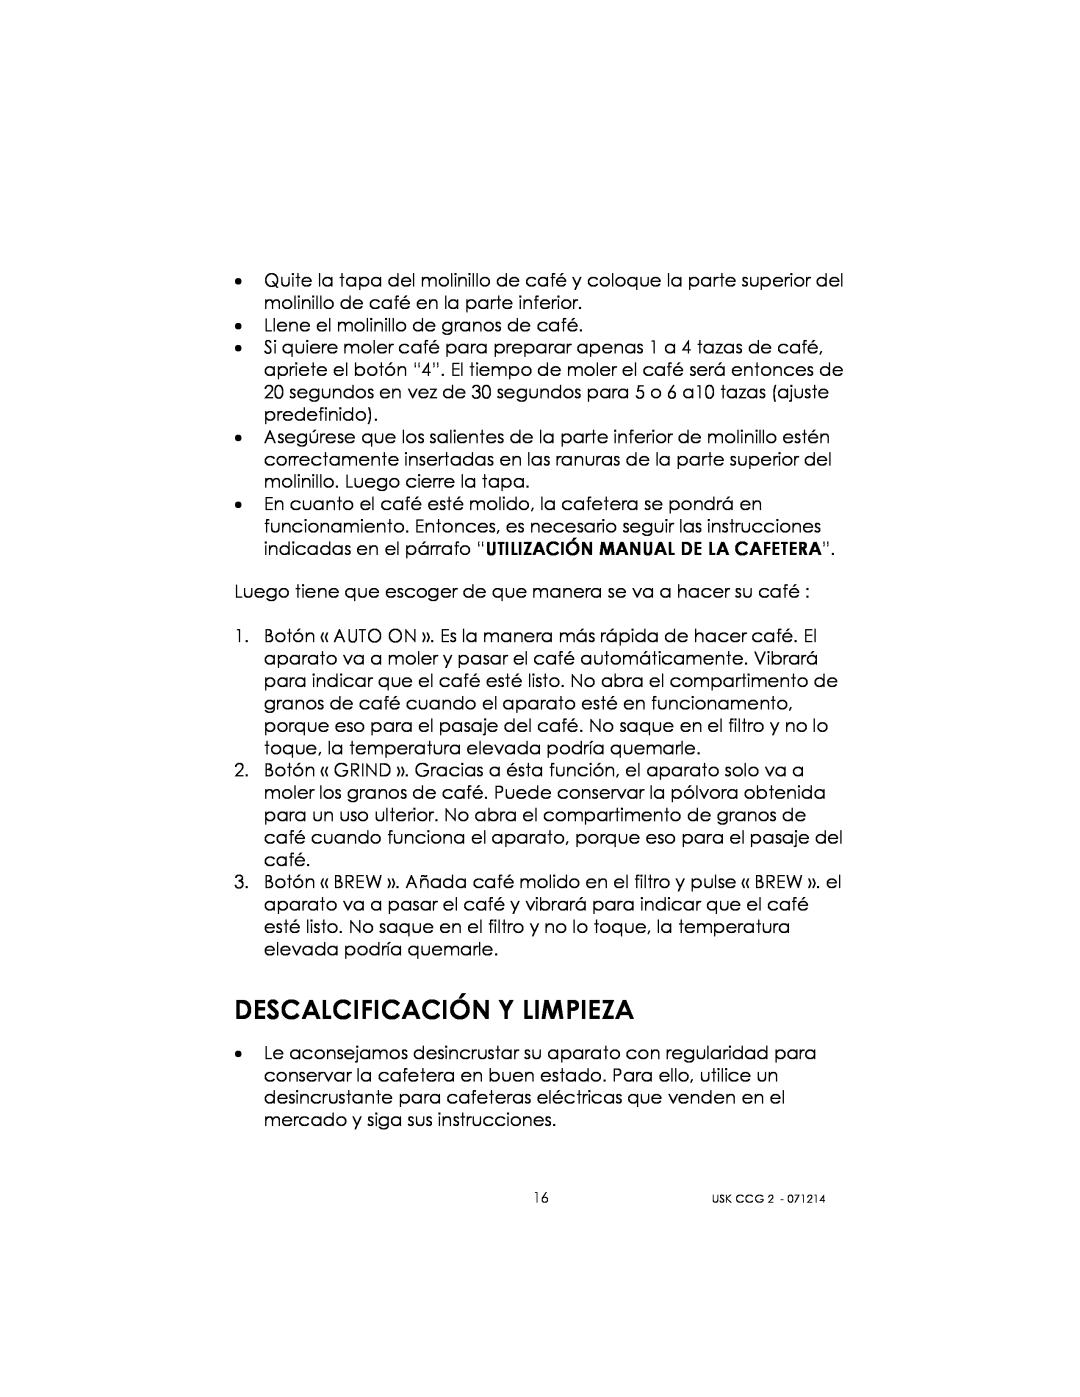 Kalorik USK CCG 2 manual Descalcificación Y Limpieza 